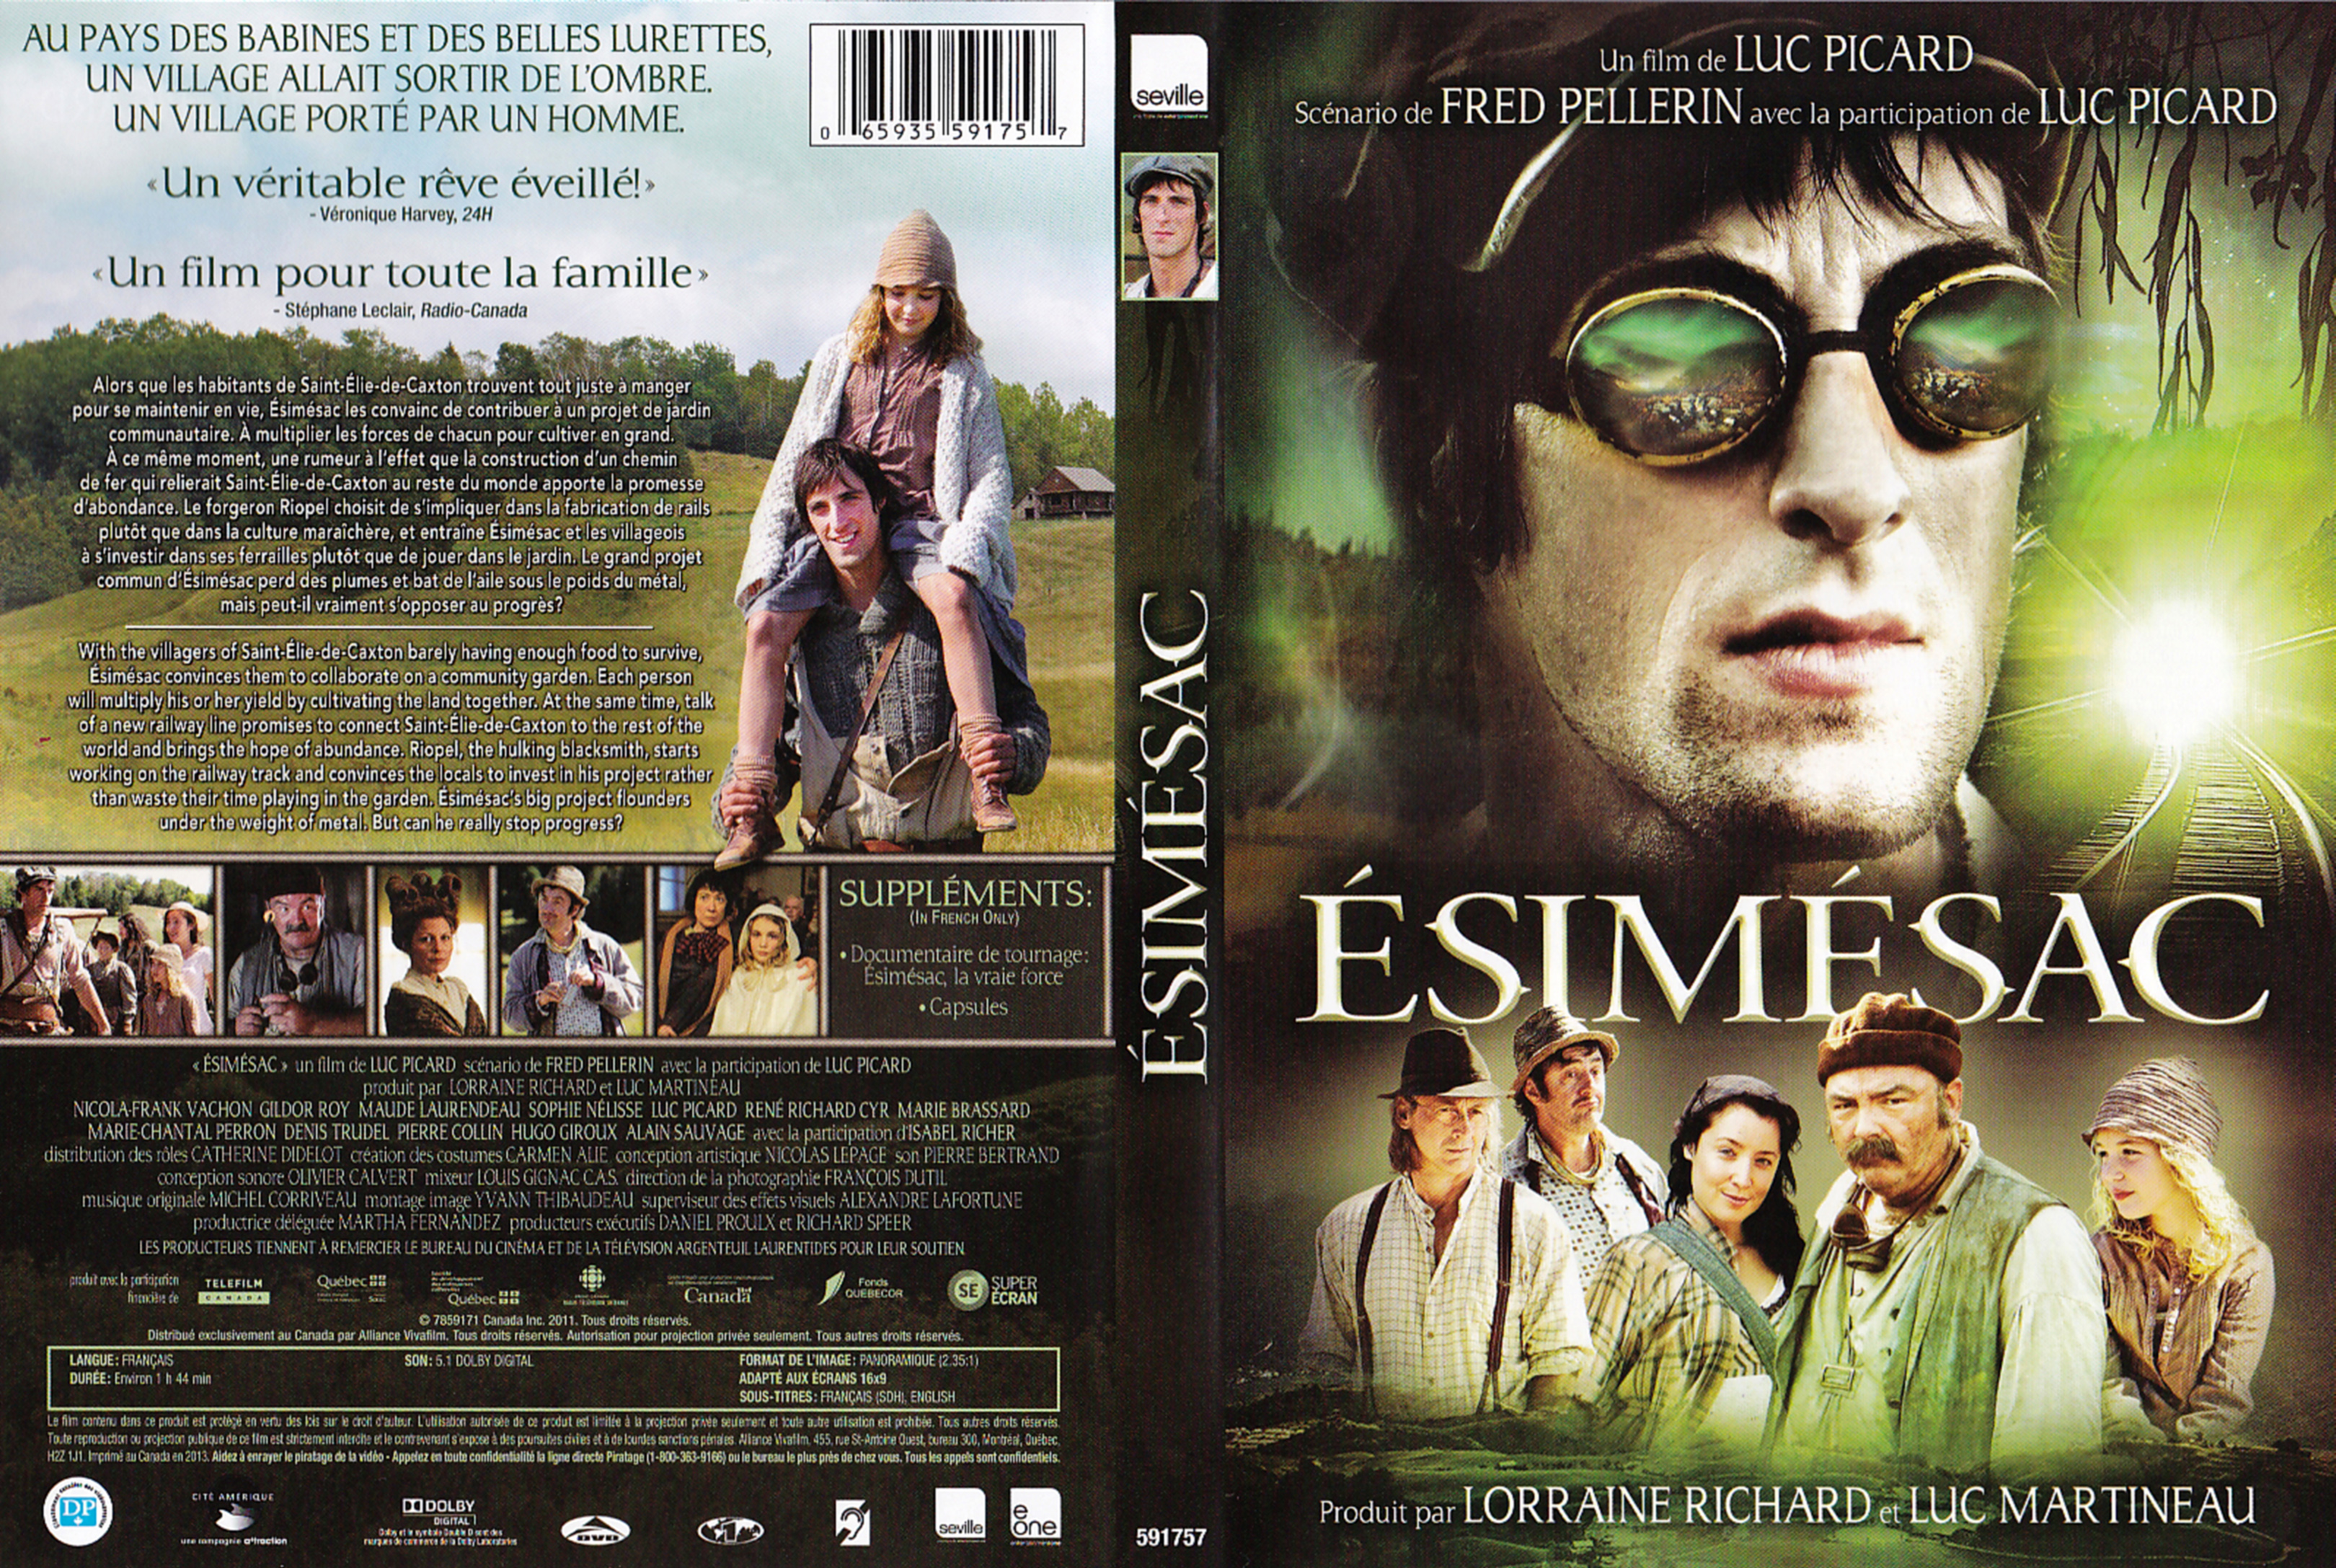 Jaquette DVD Esimsac